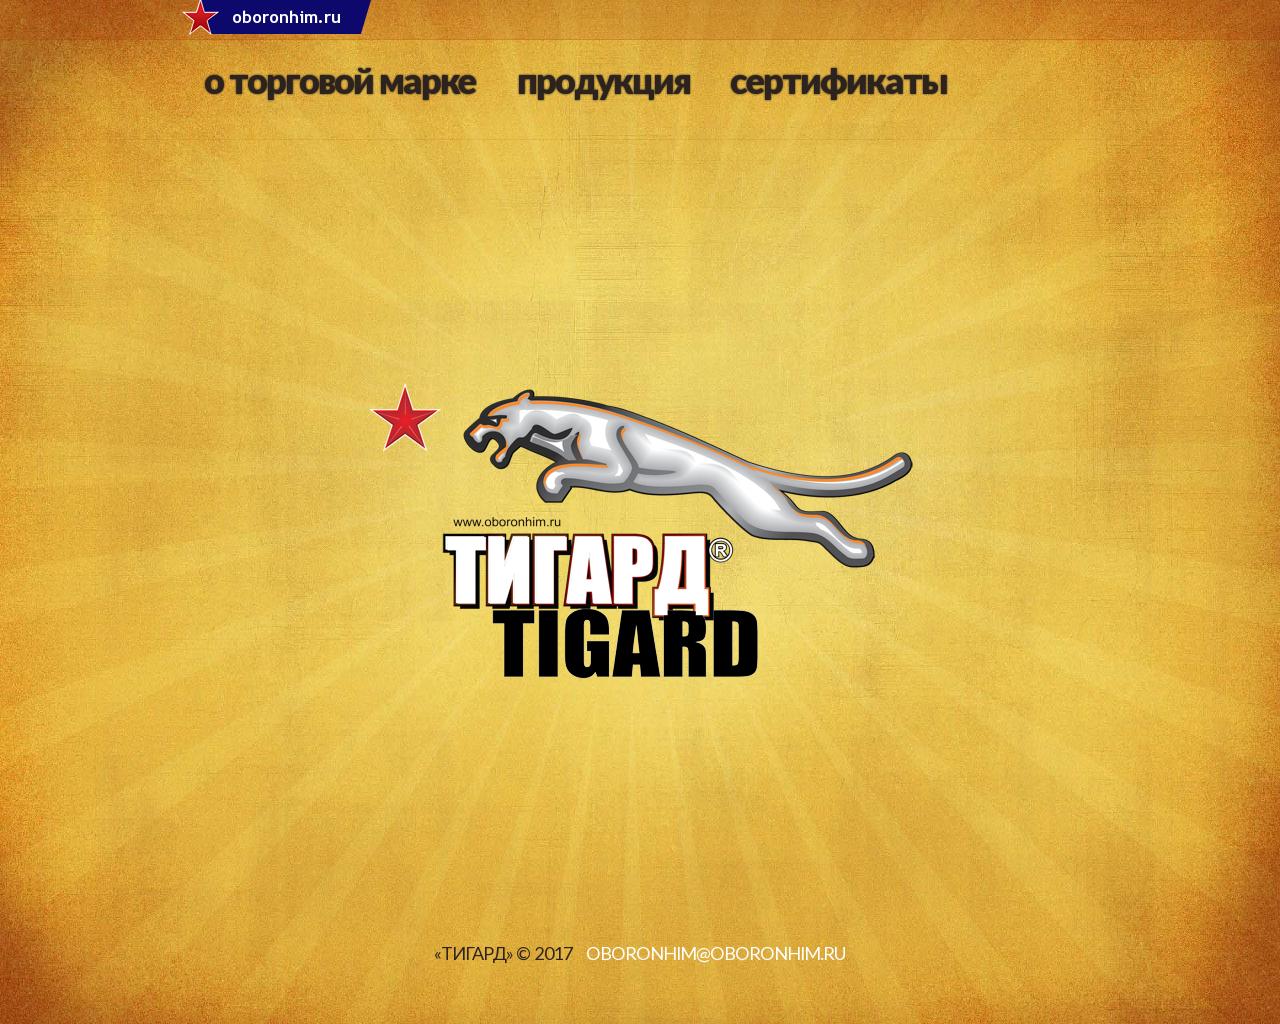 Изображение сайта tigard.ru в разрешении 1280x1024